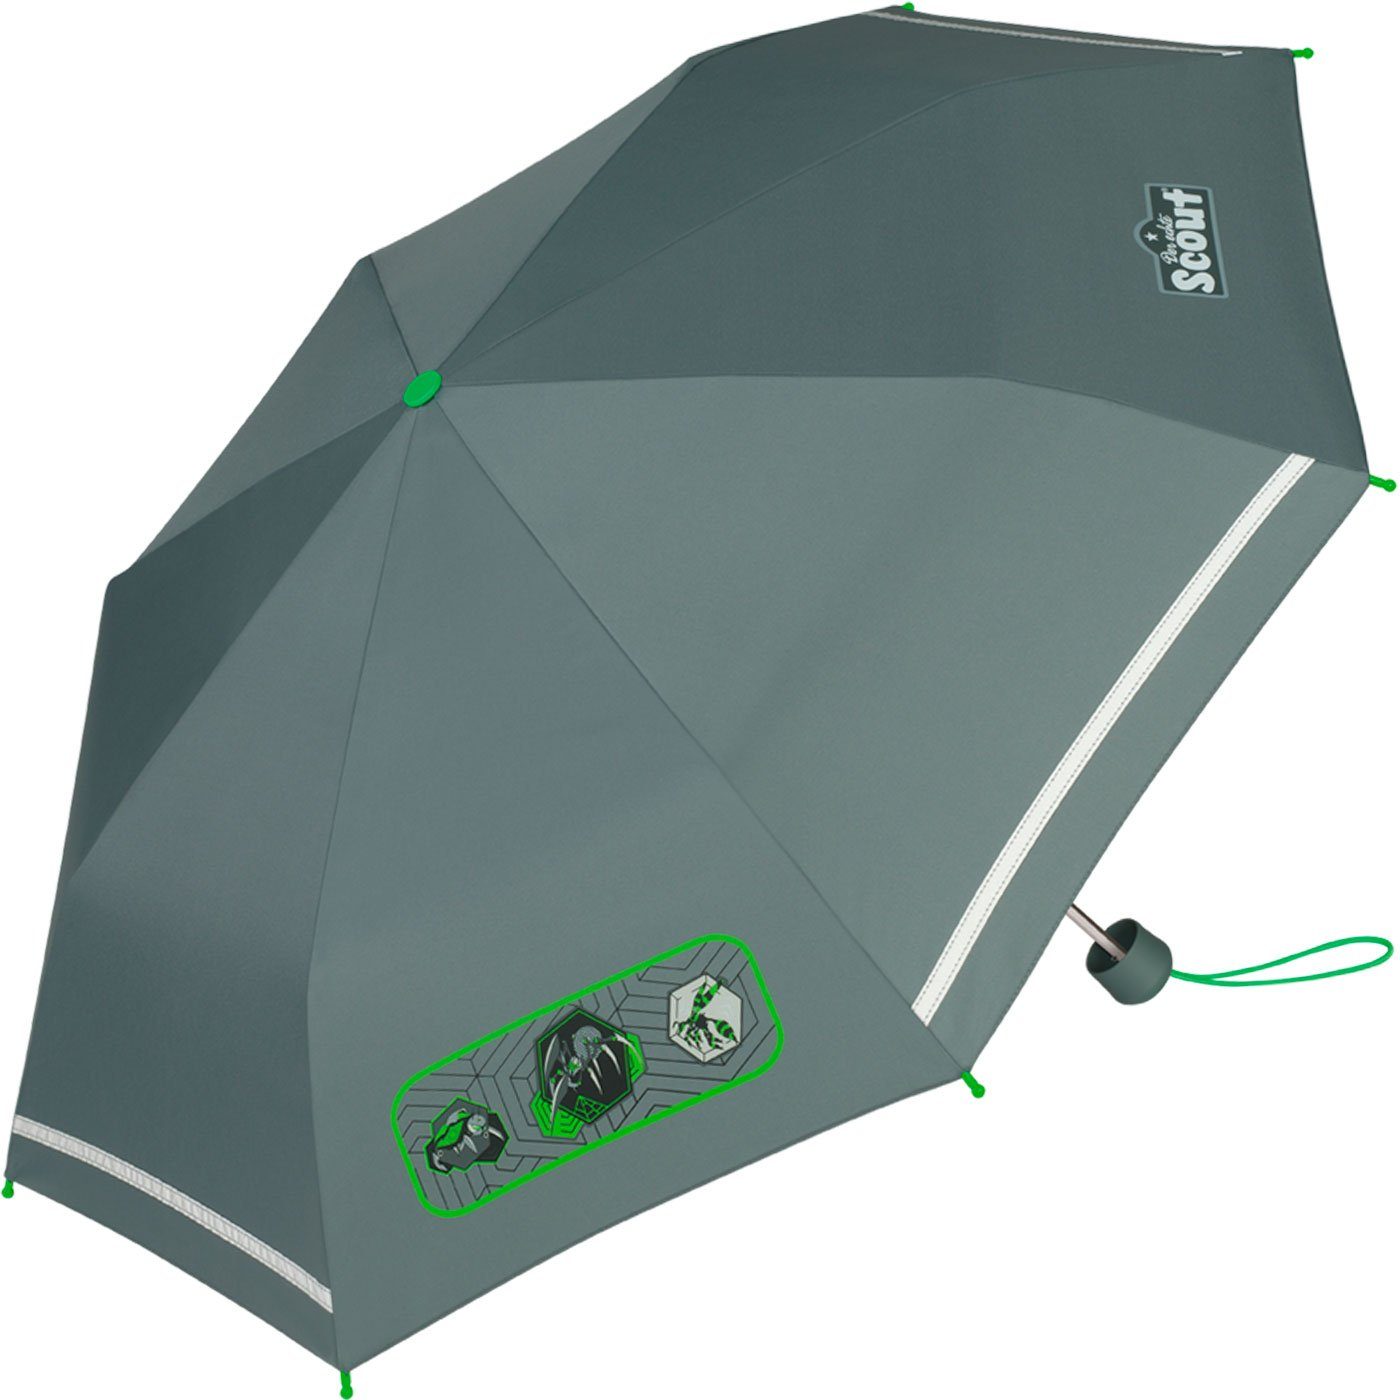 bedruckt, leicht Mini gemacht Scout für reflektierend Kinder extra Taschenregenschirm Kinderschirm